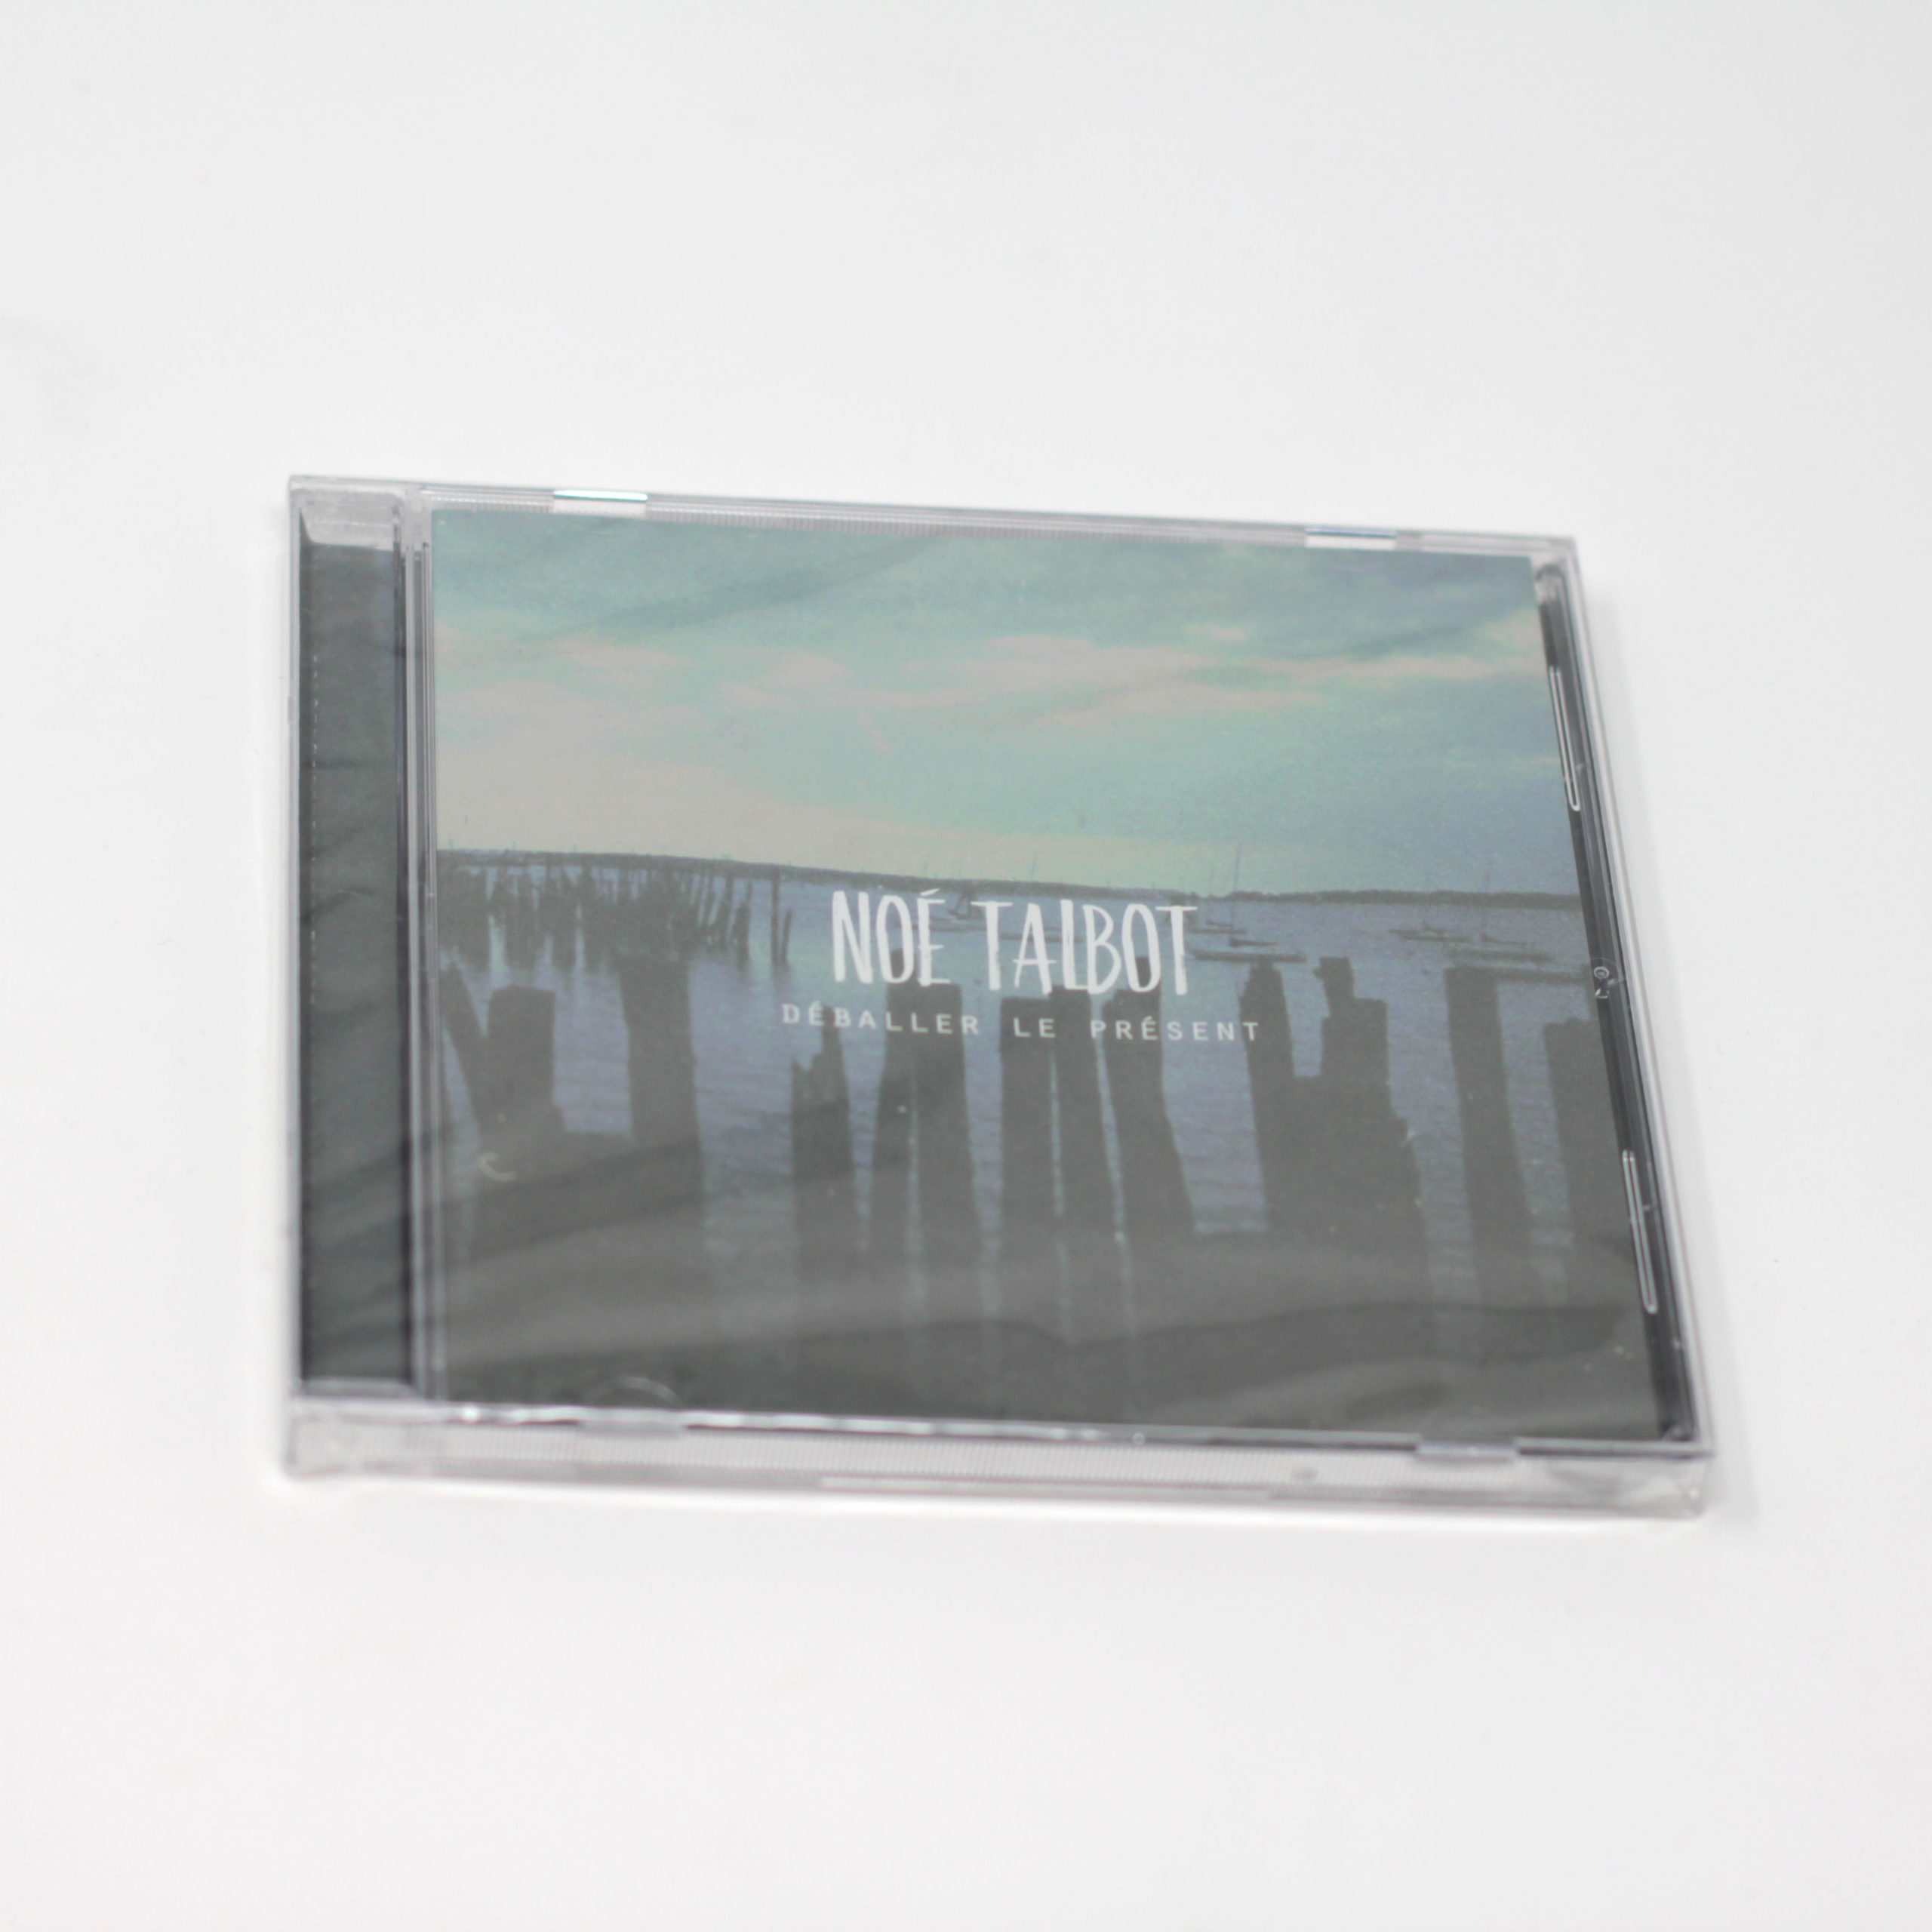 Noé Talbot “Déballer le présent” CD